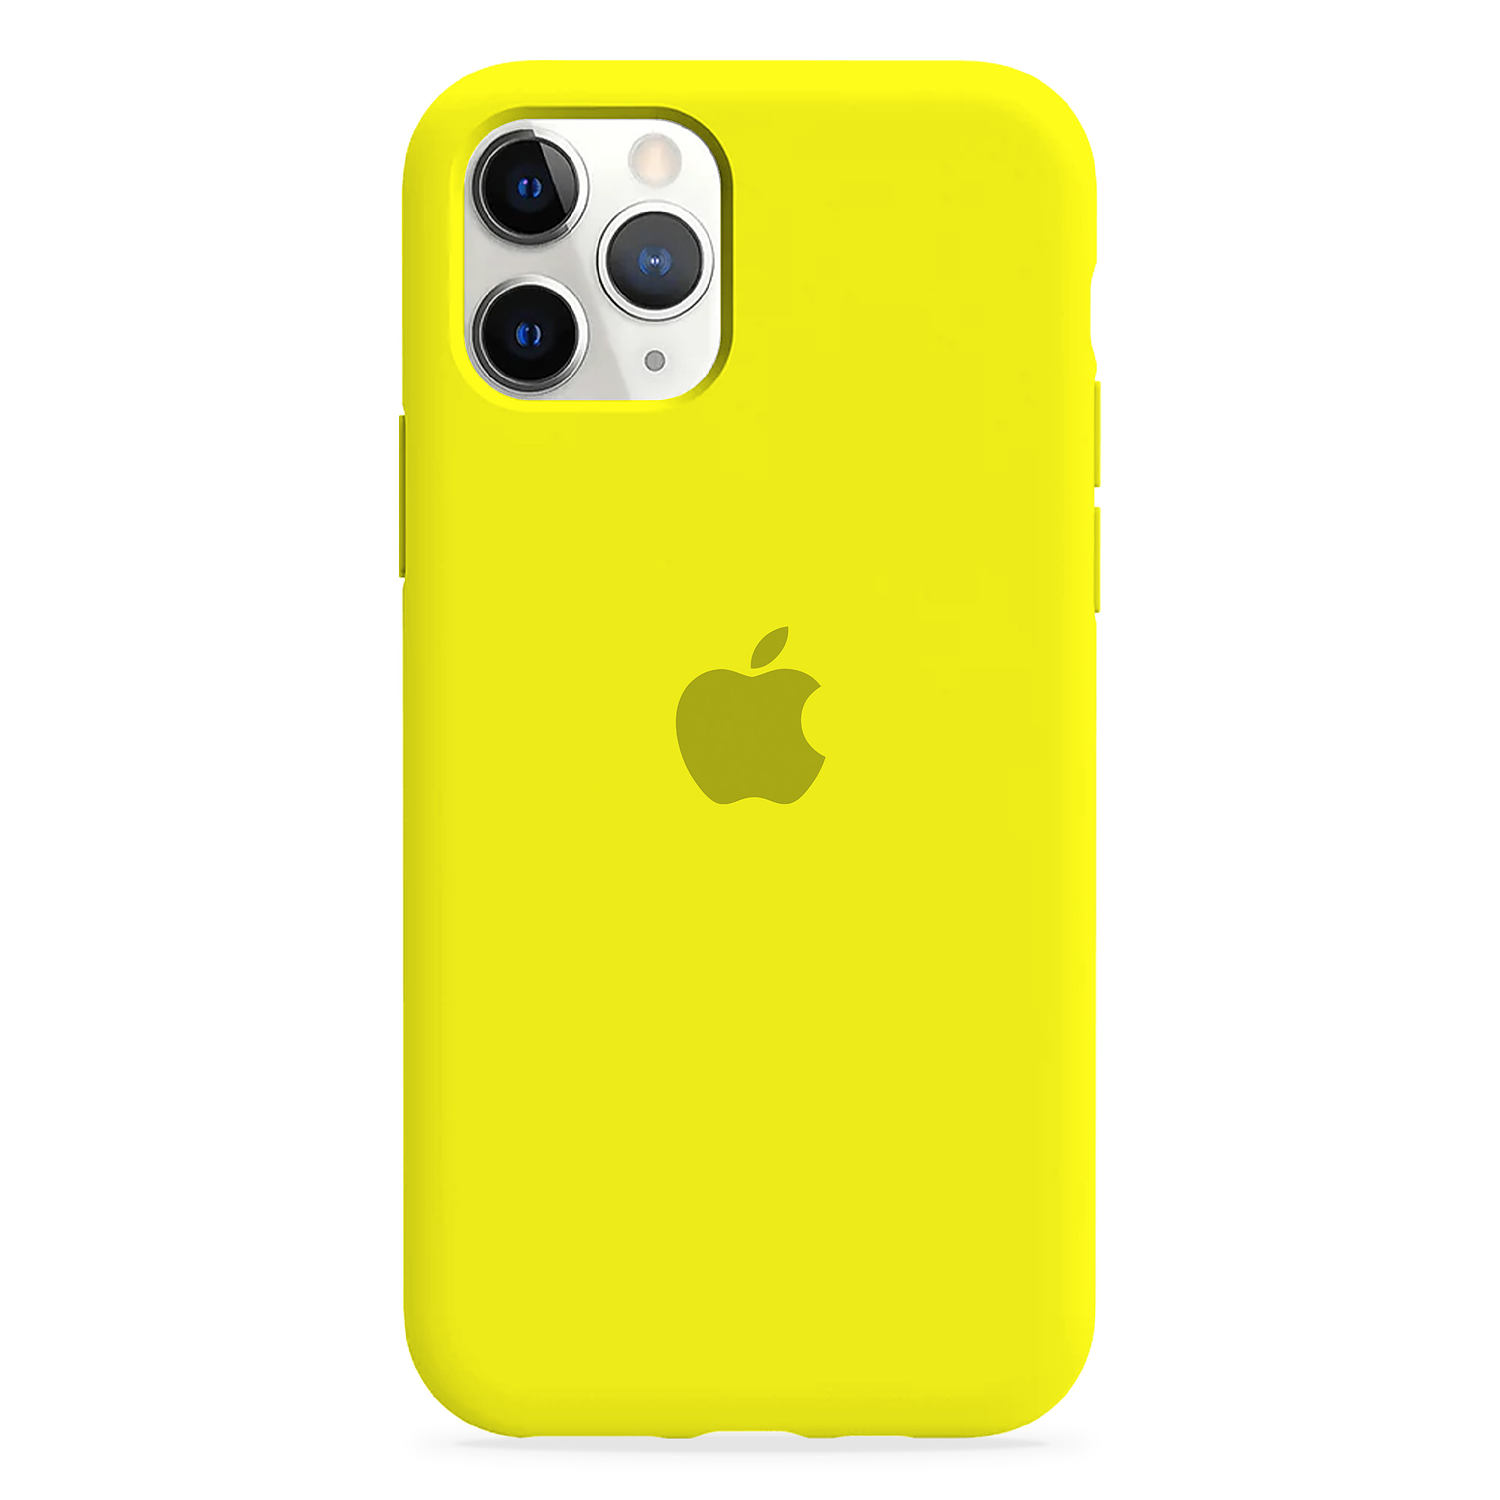 Carcasa de Silicona - iPhone 11 Pro 6